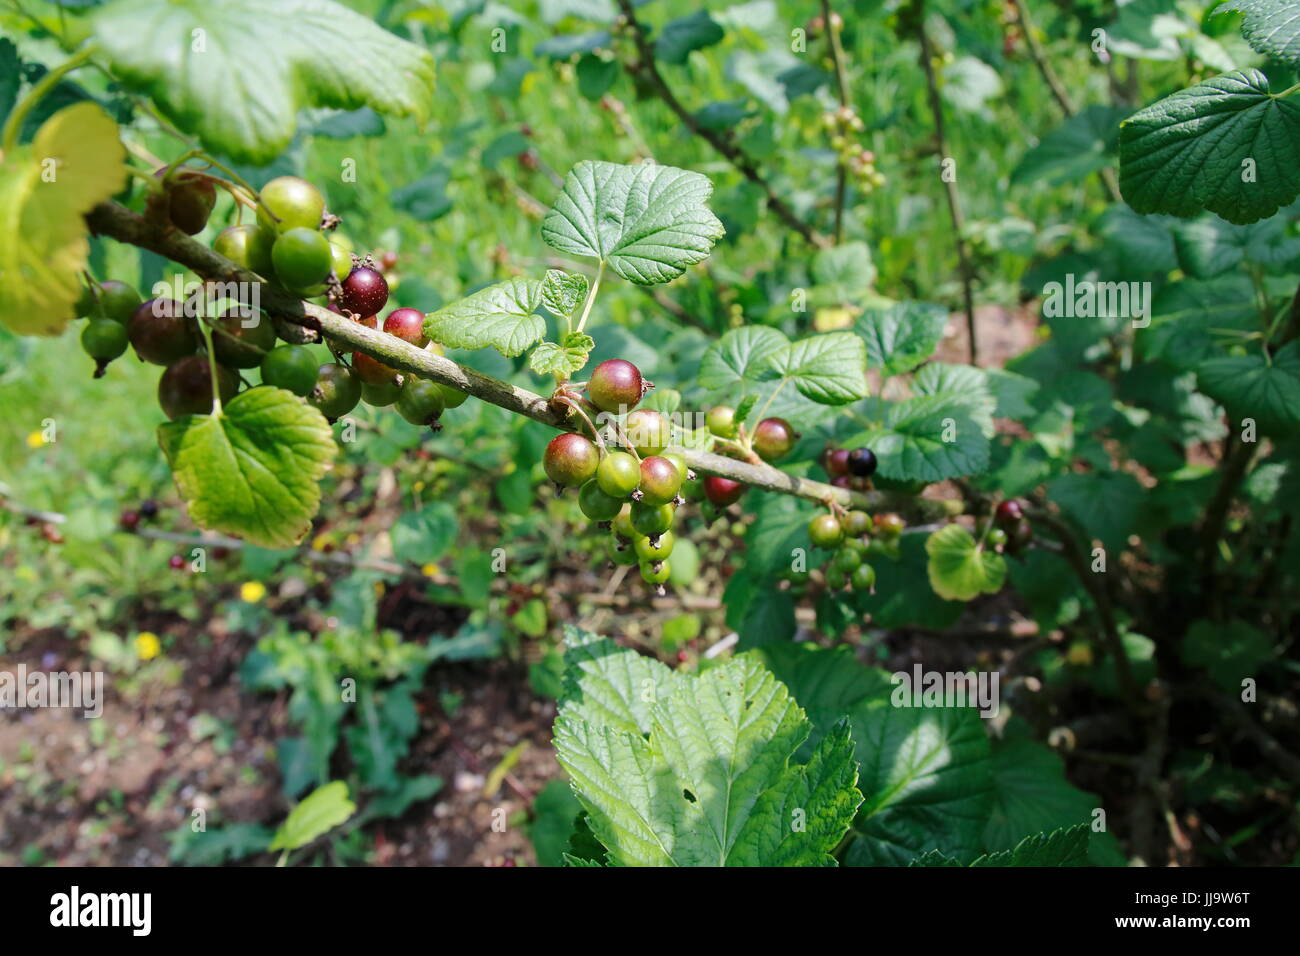 Schwarze Johannisbeere im Wachstum am Strauch, grüne Beeren mit leichter Färbung Foto Stock